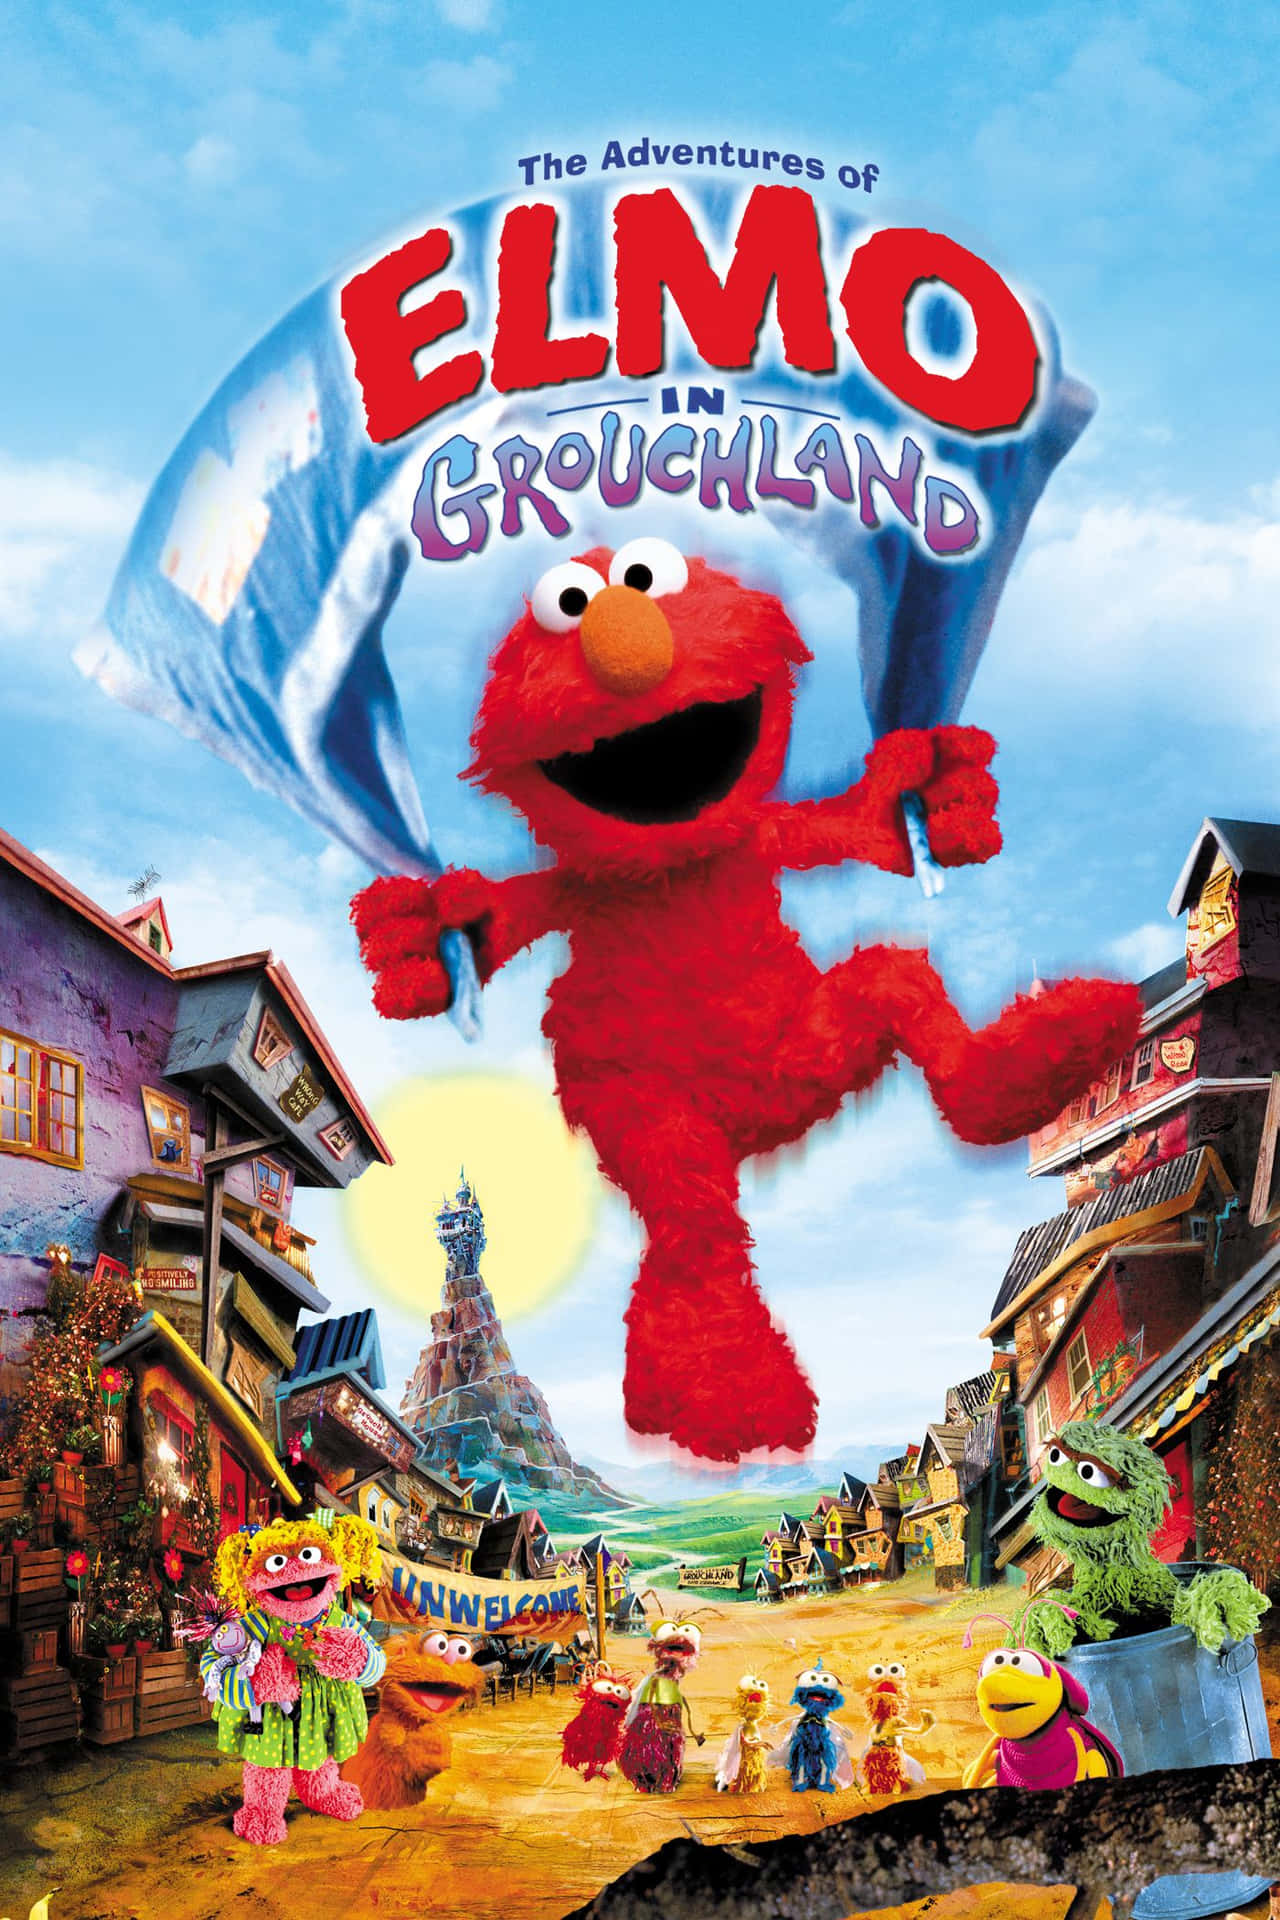 Elmo enthusiastically celebrates the power of friendship